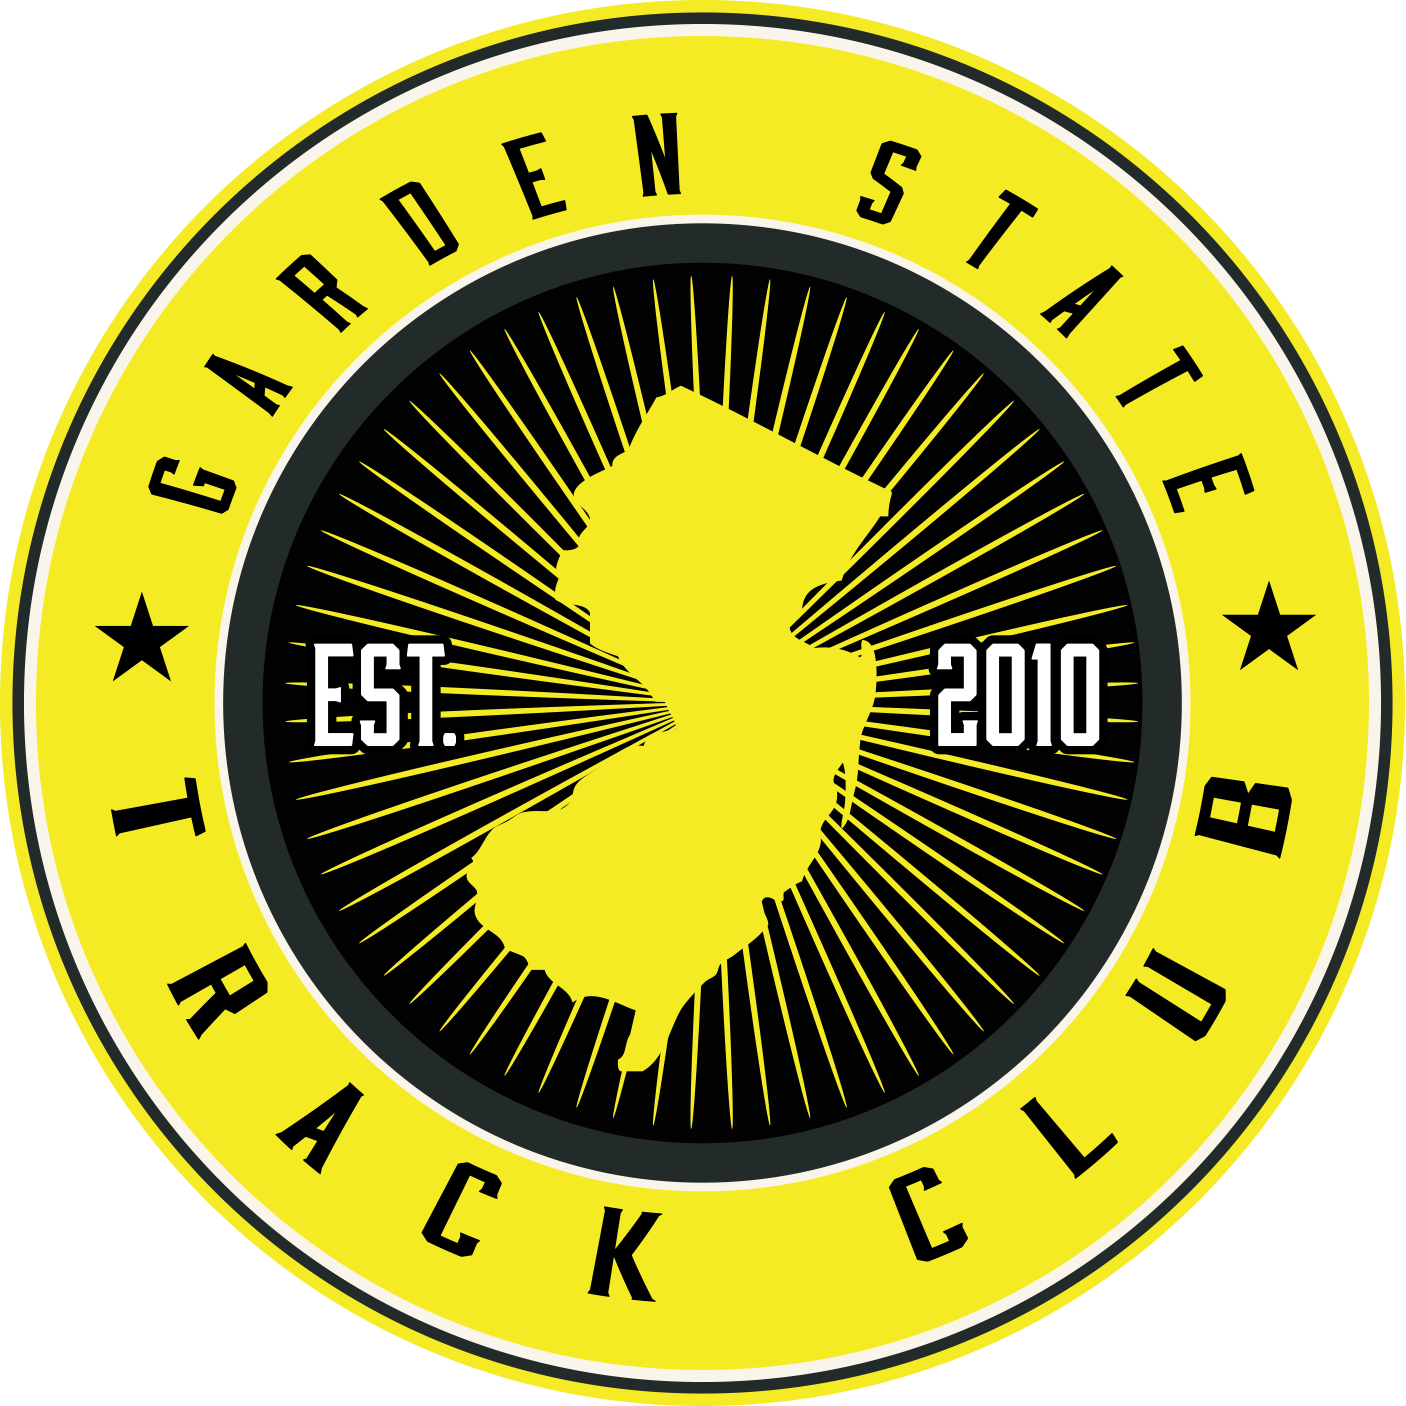 Garden State Track Club